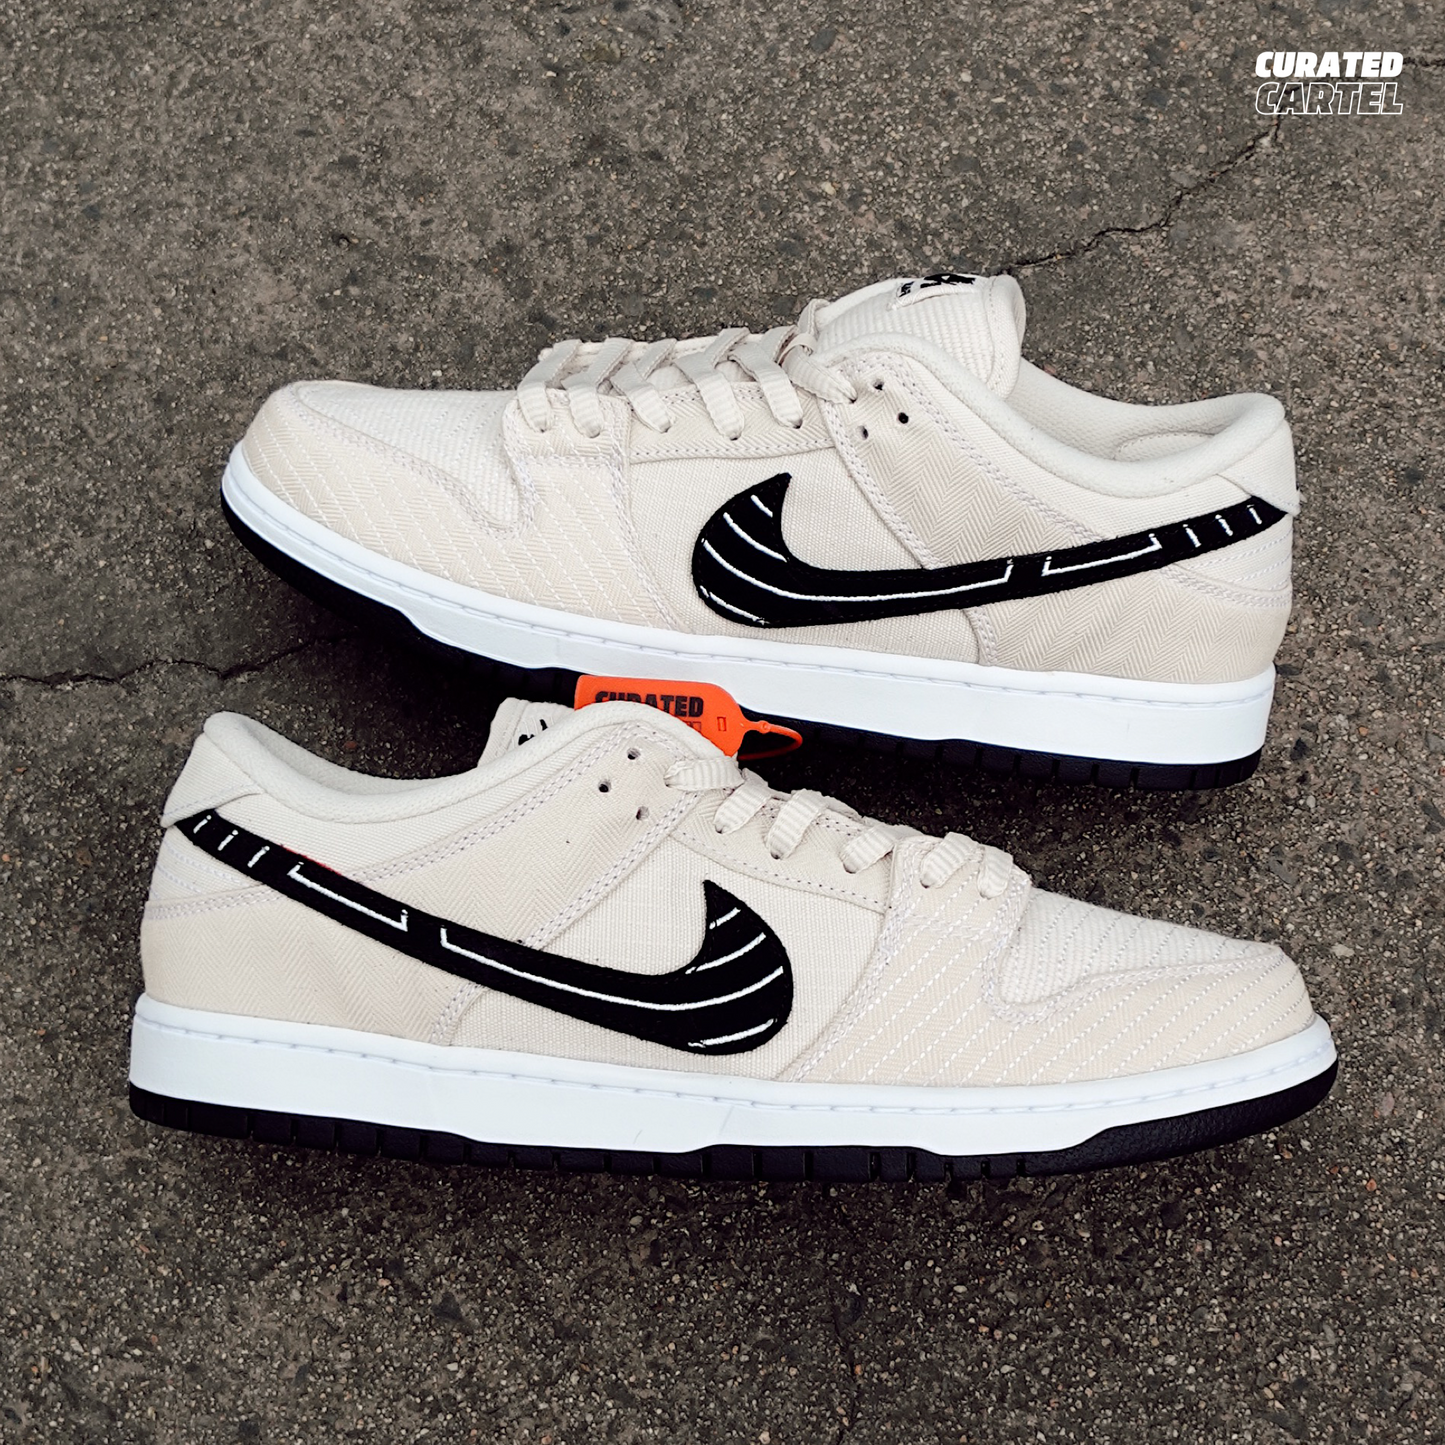 Nike SB Dunk Low “Albino & Preto”